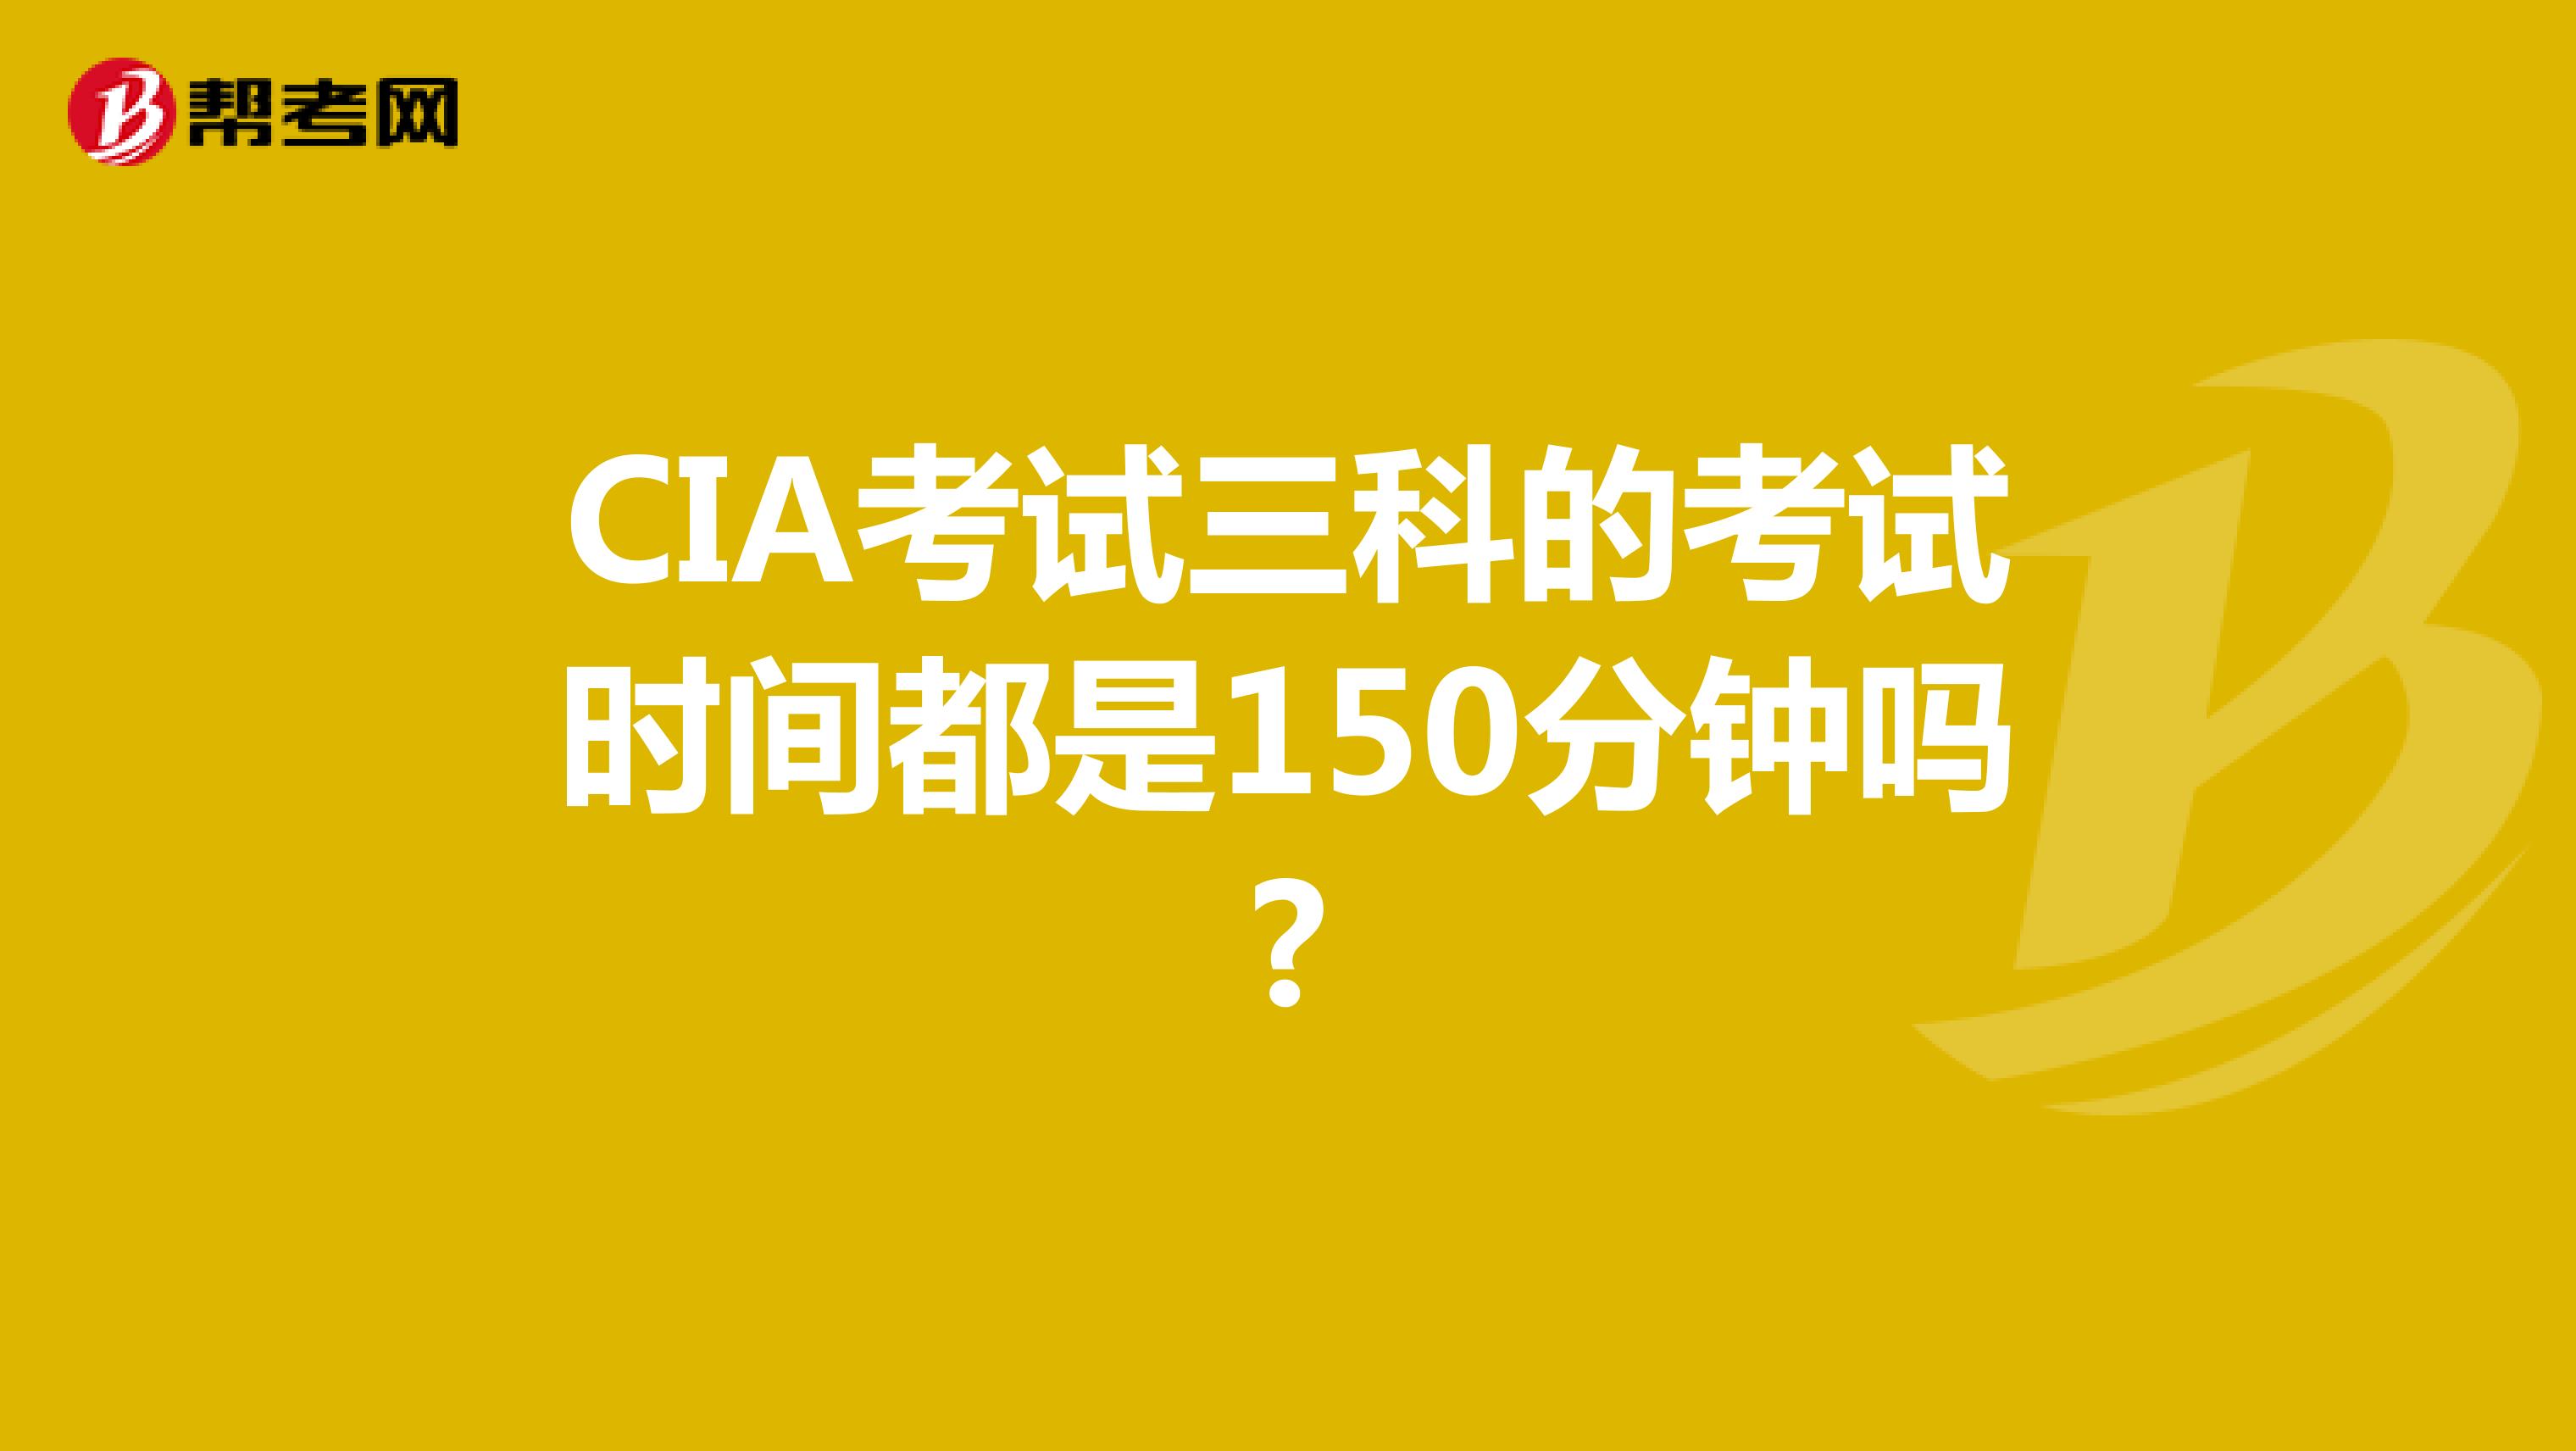 CIA考试三科的考试时间都是150分钟吗?